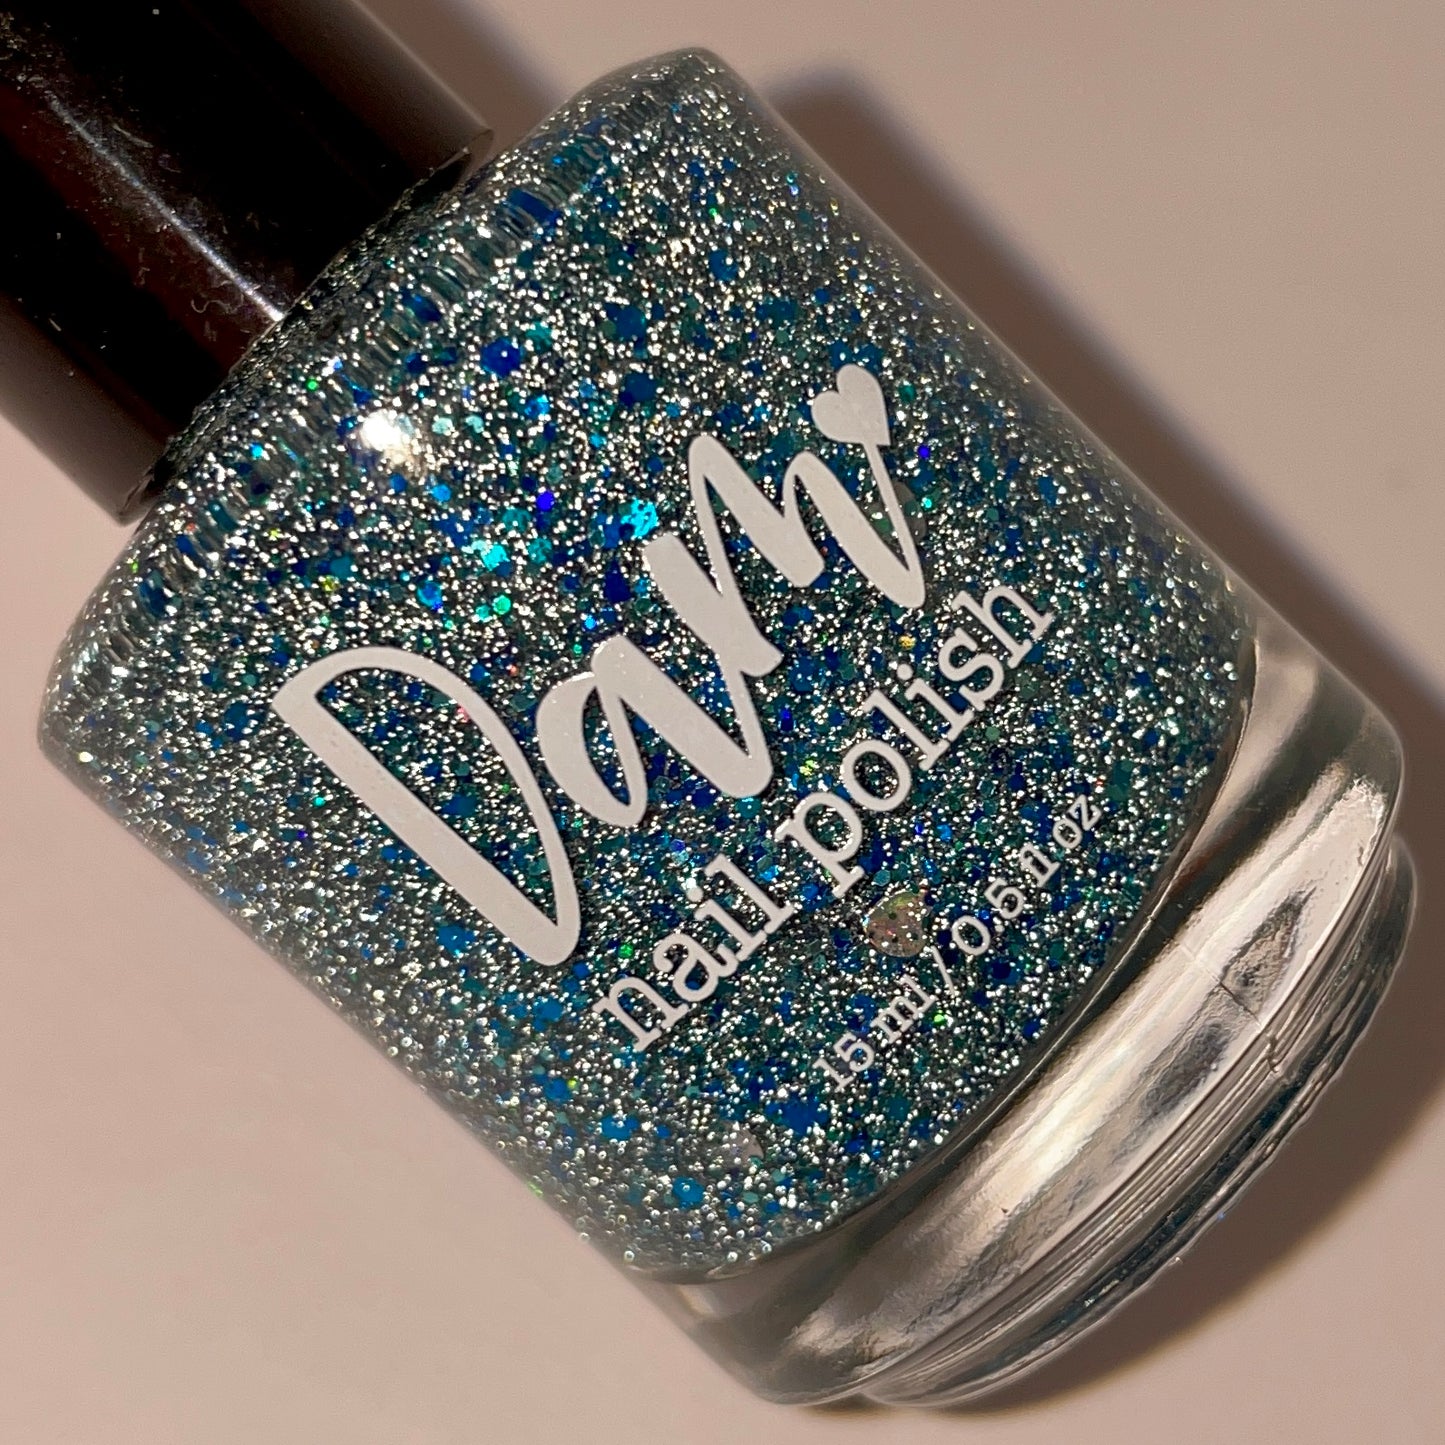 Devotion Ocean - Blue Reflective Glitter Nail Polish - Love Affair Trio - Dam